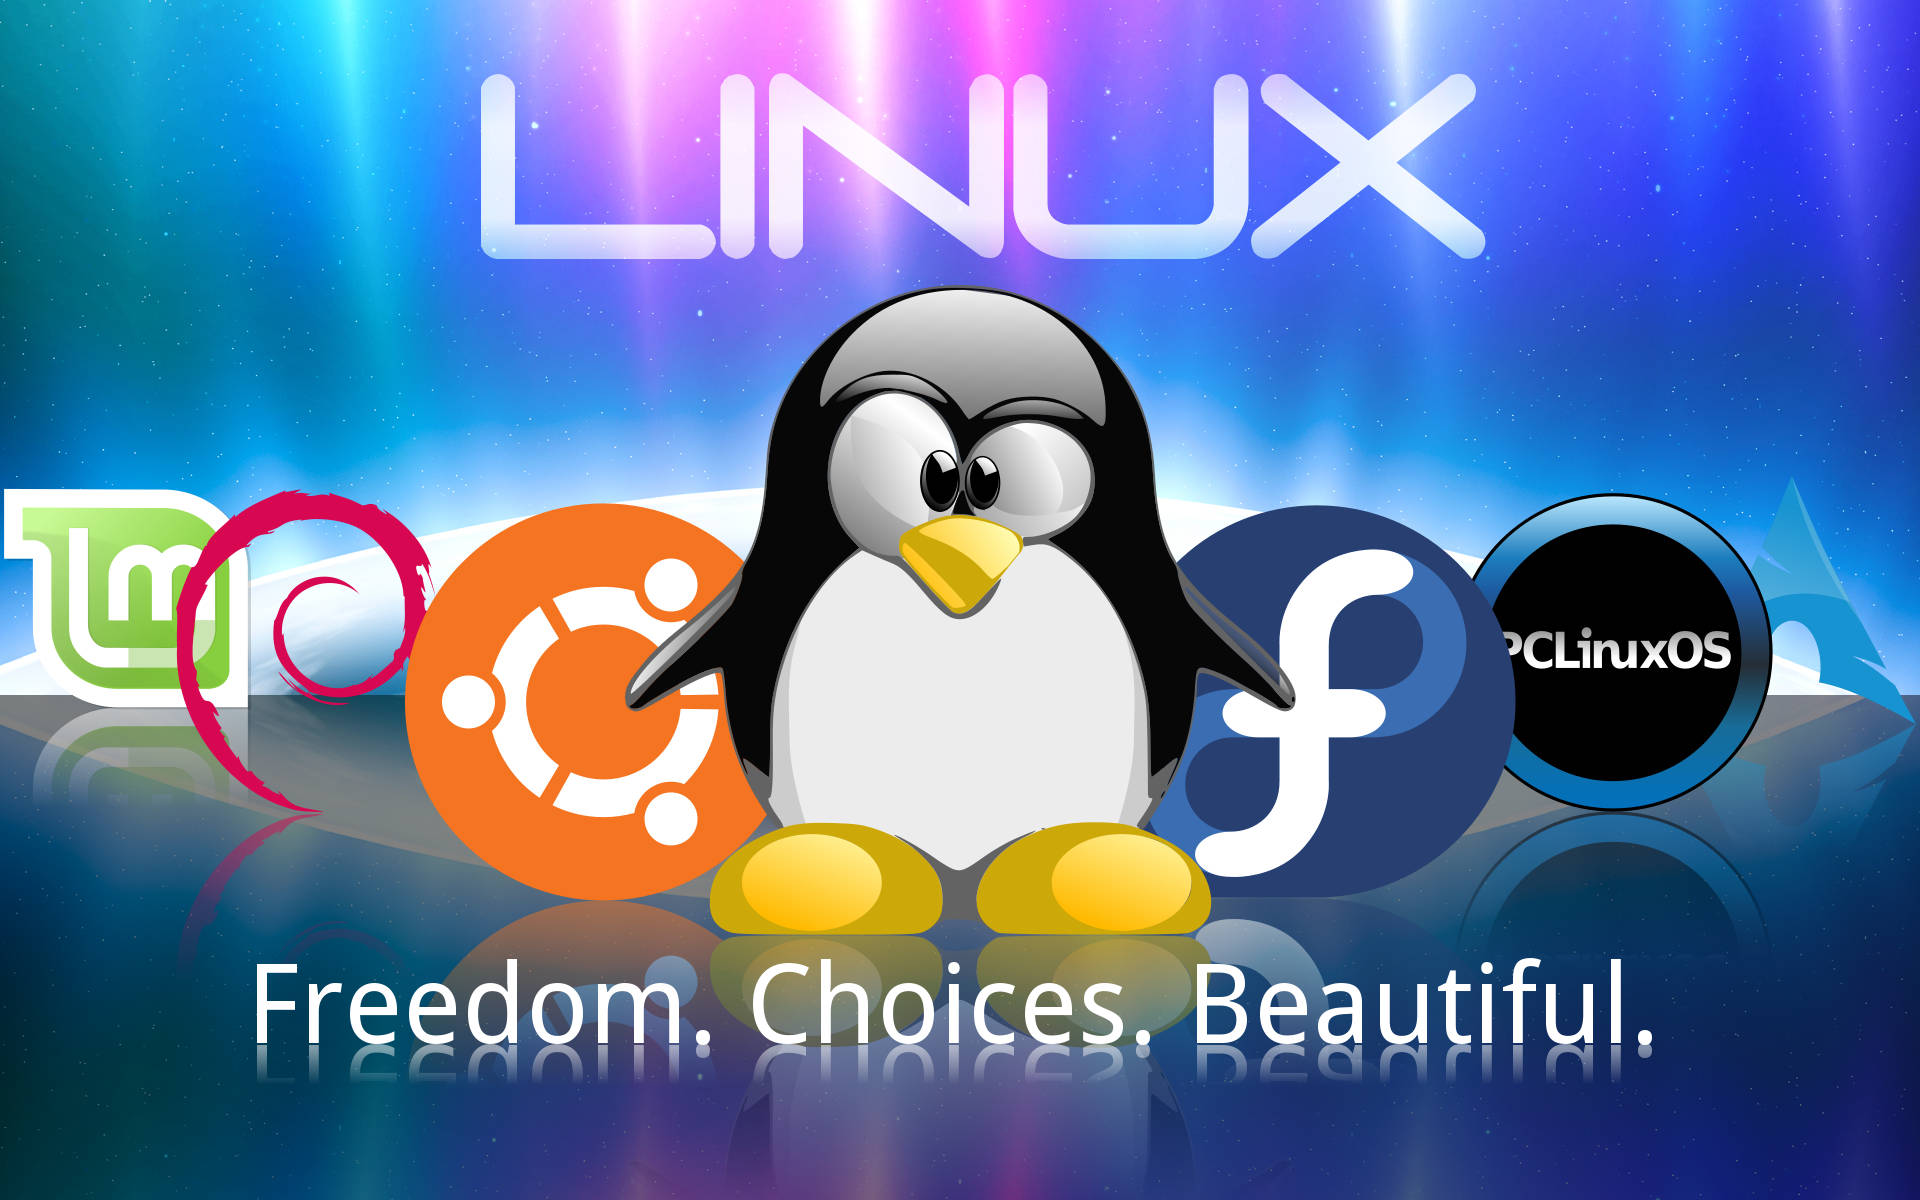 Imágenes De Linux Os